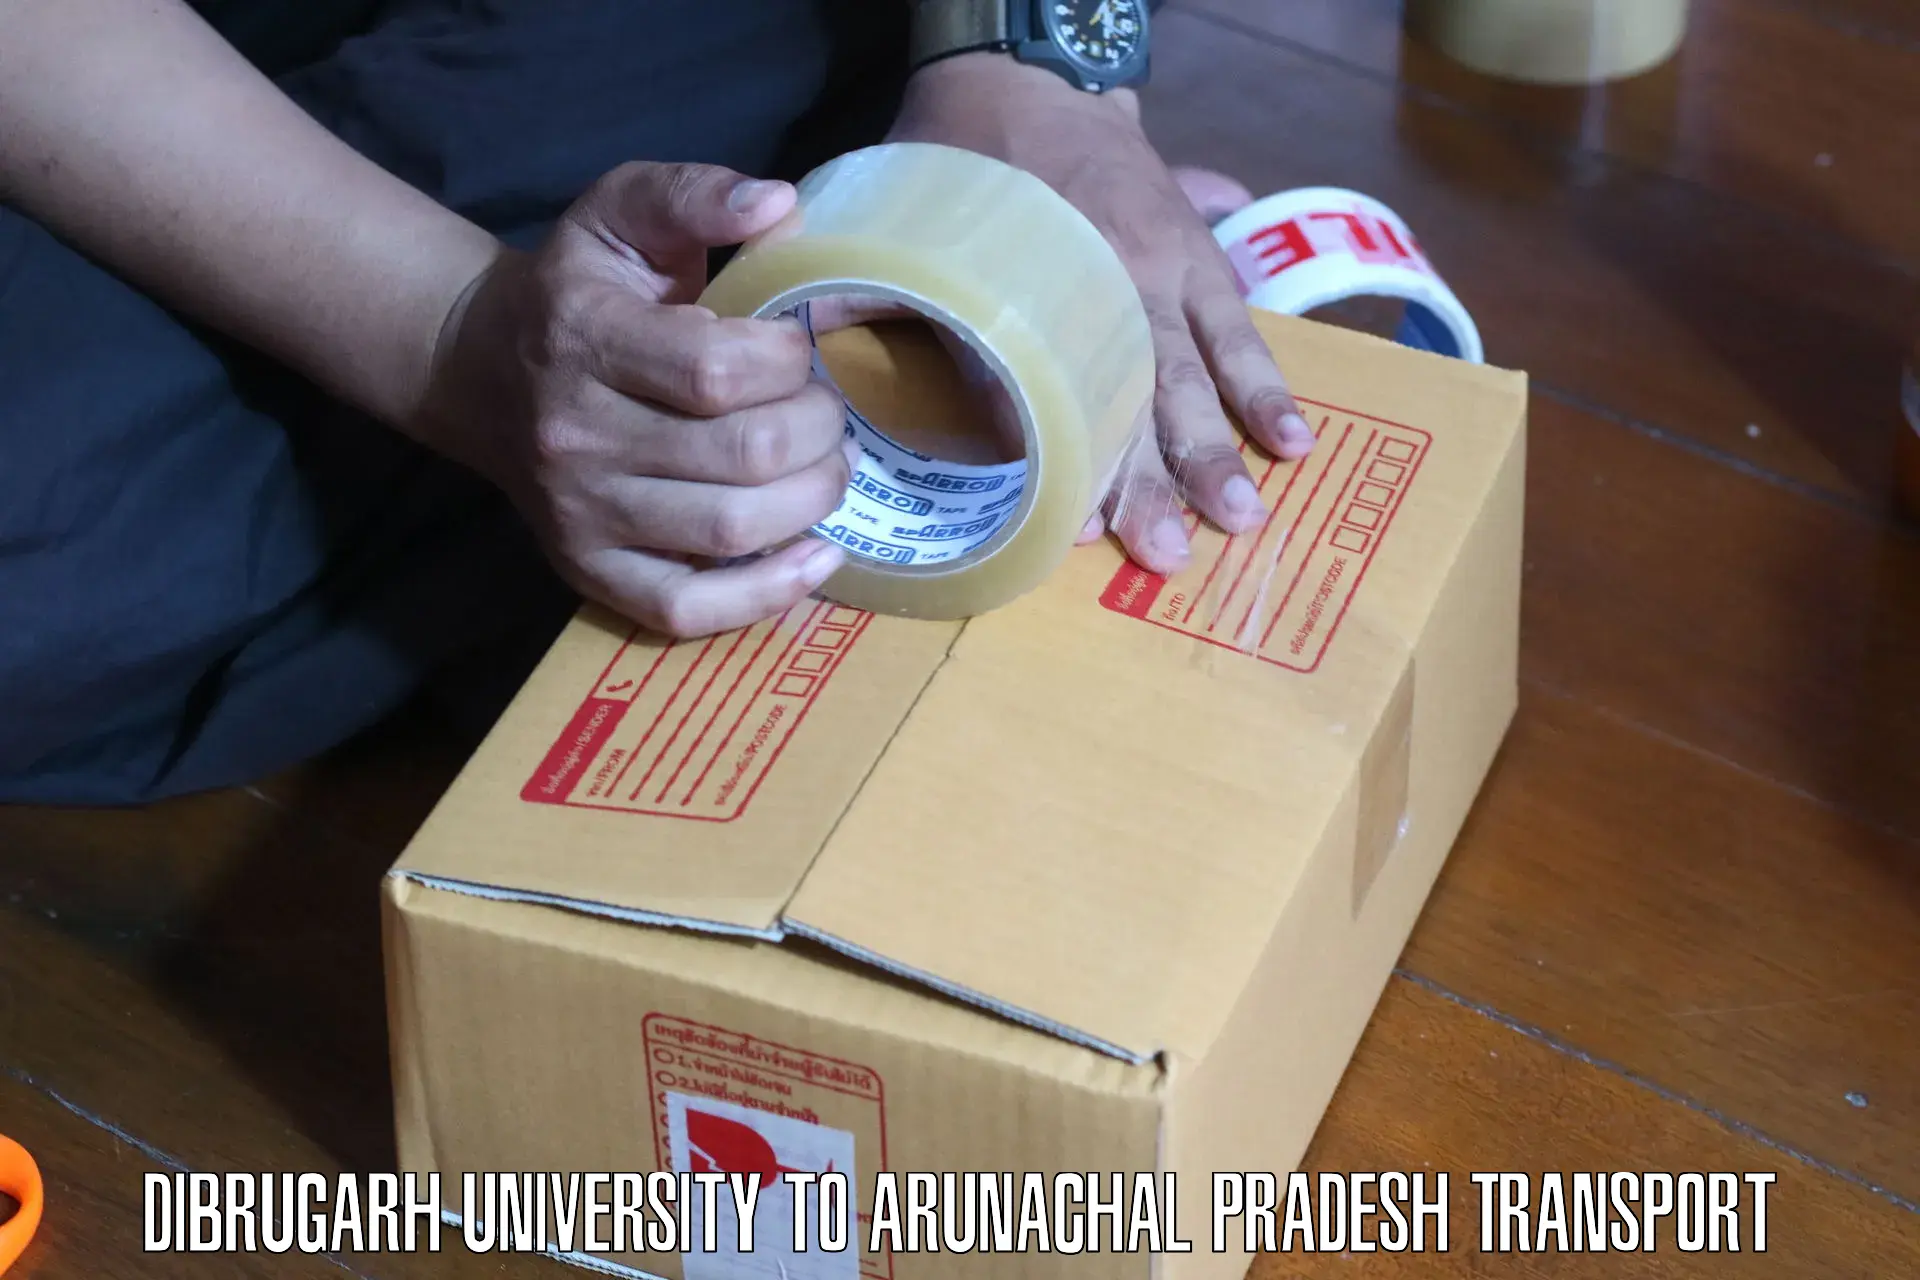 Air freight transport services in Dibrugarh University to Arunachal Pradesh